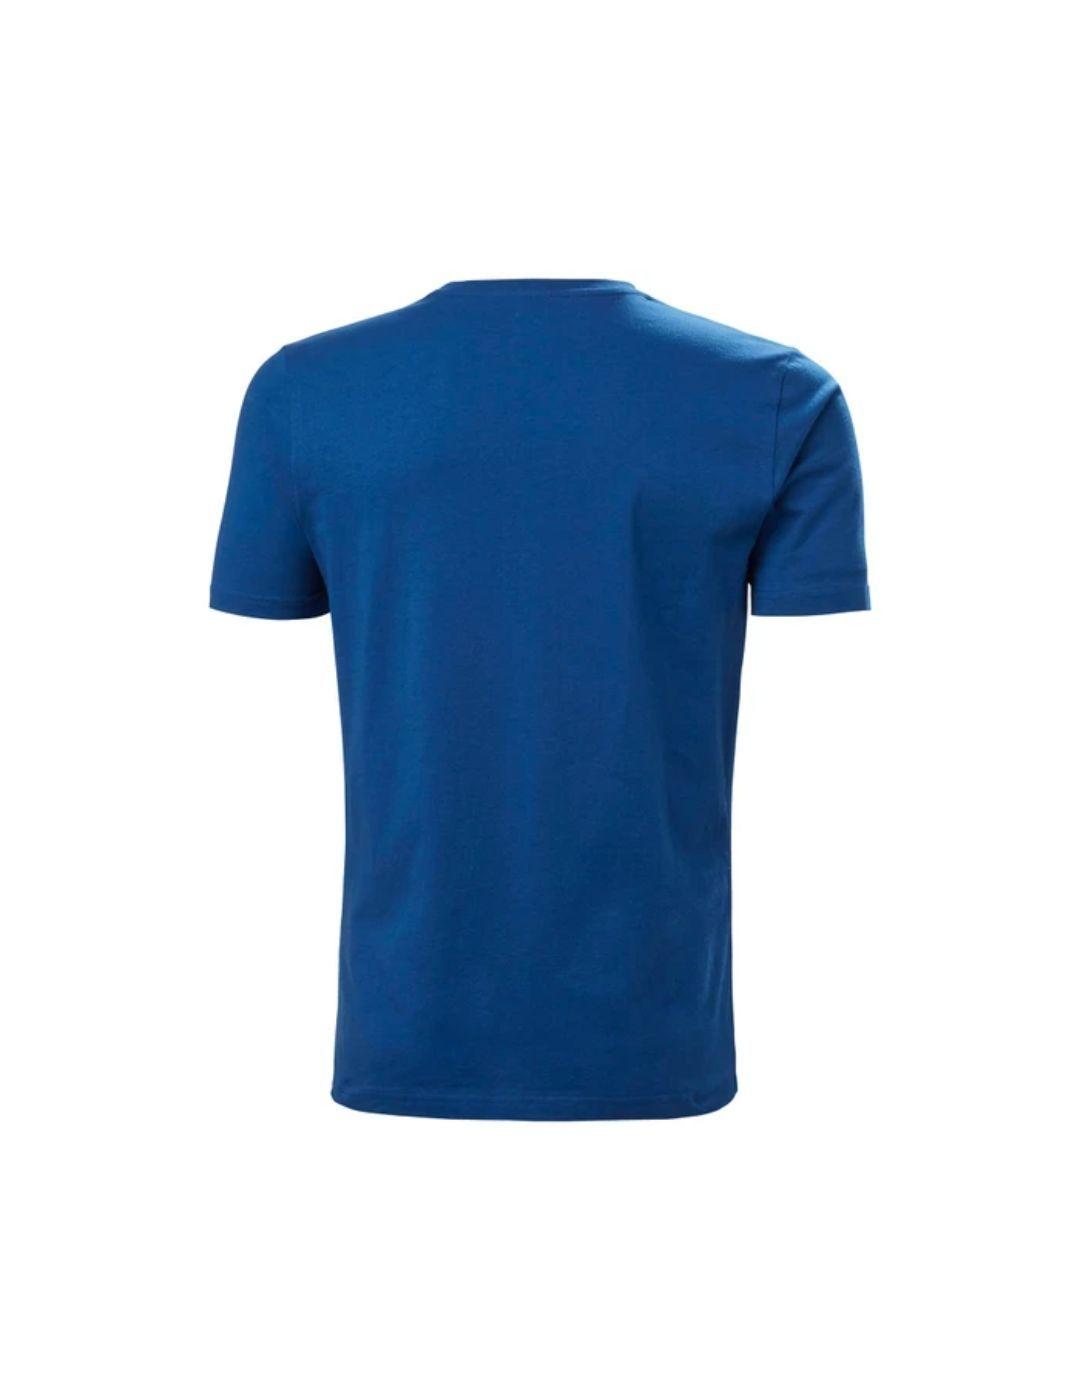 Camiseta Helly Hansen HH logo azul para hombre-a